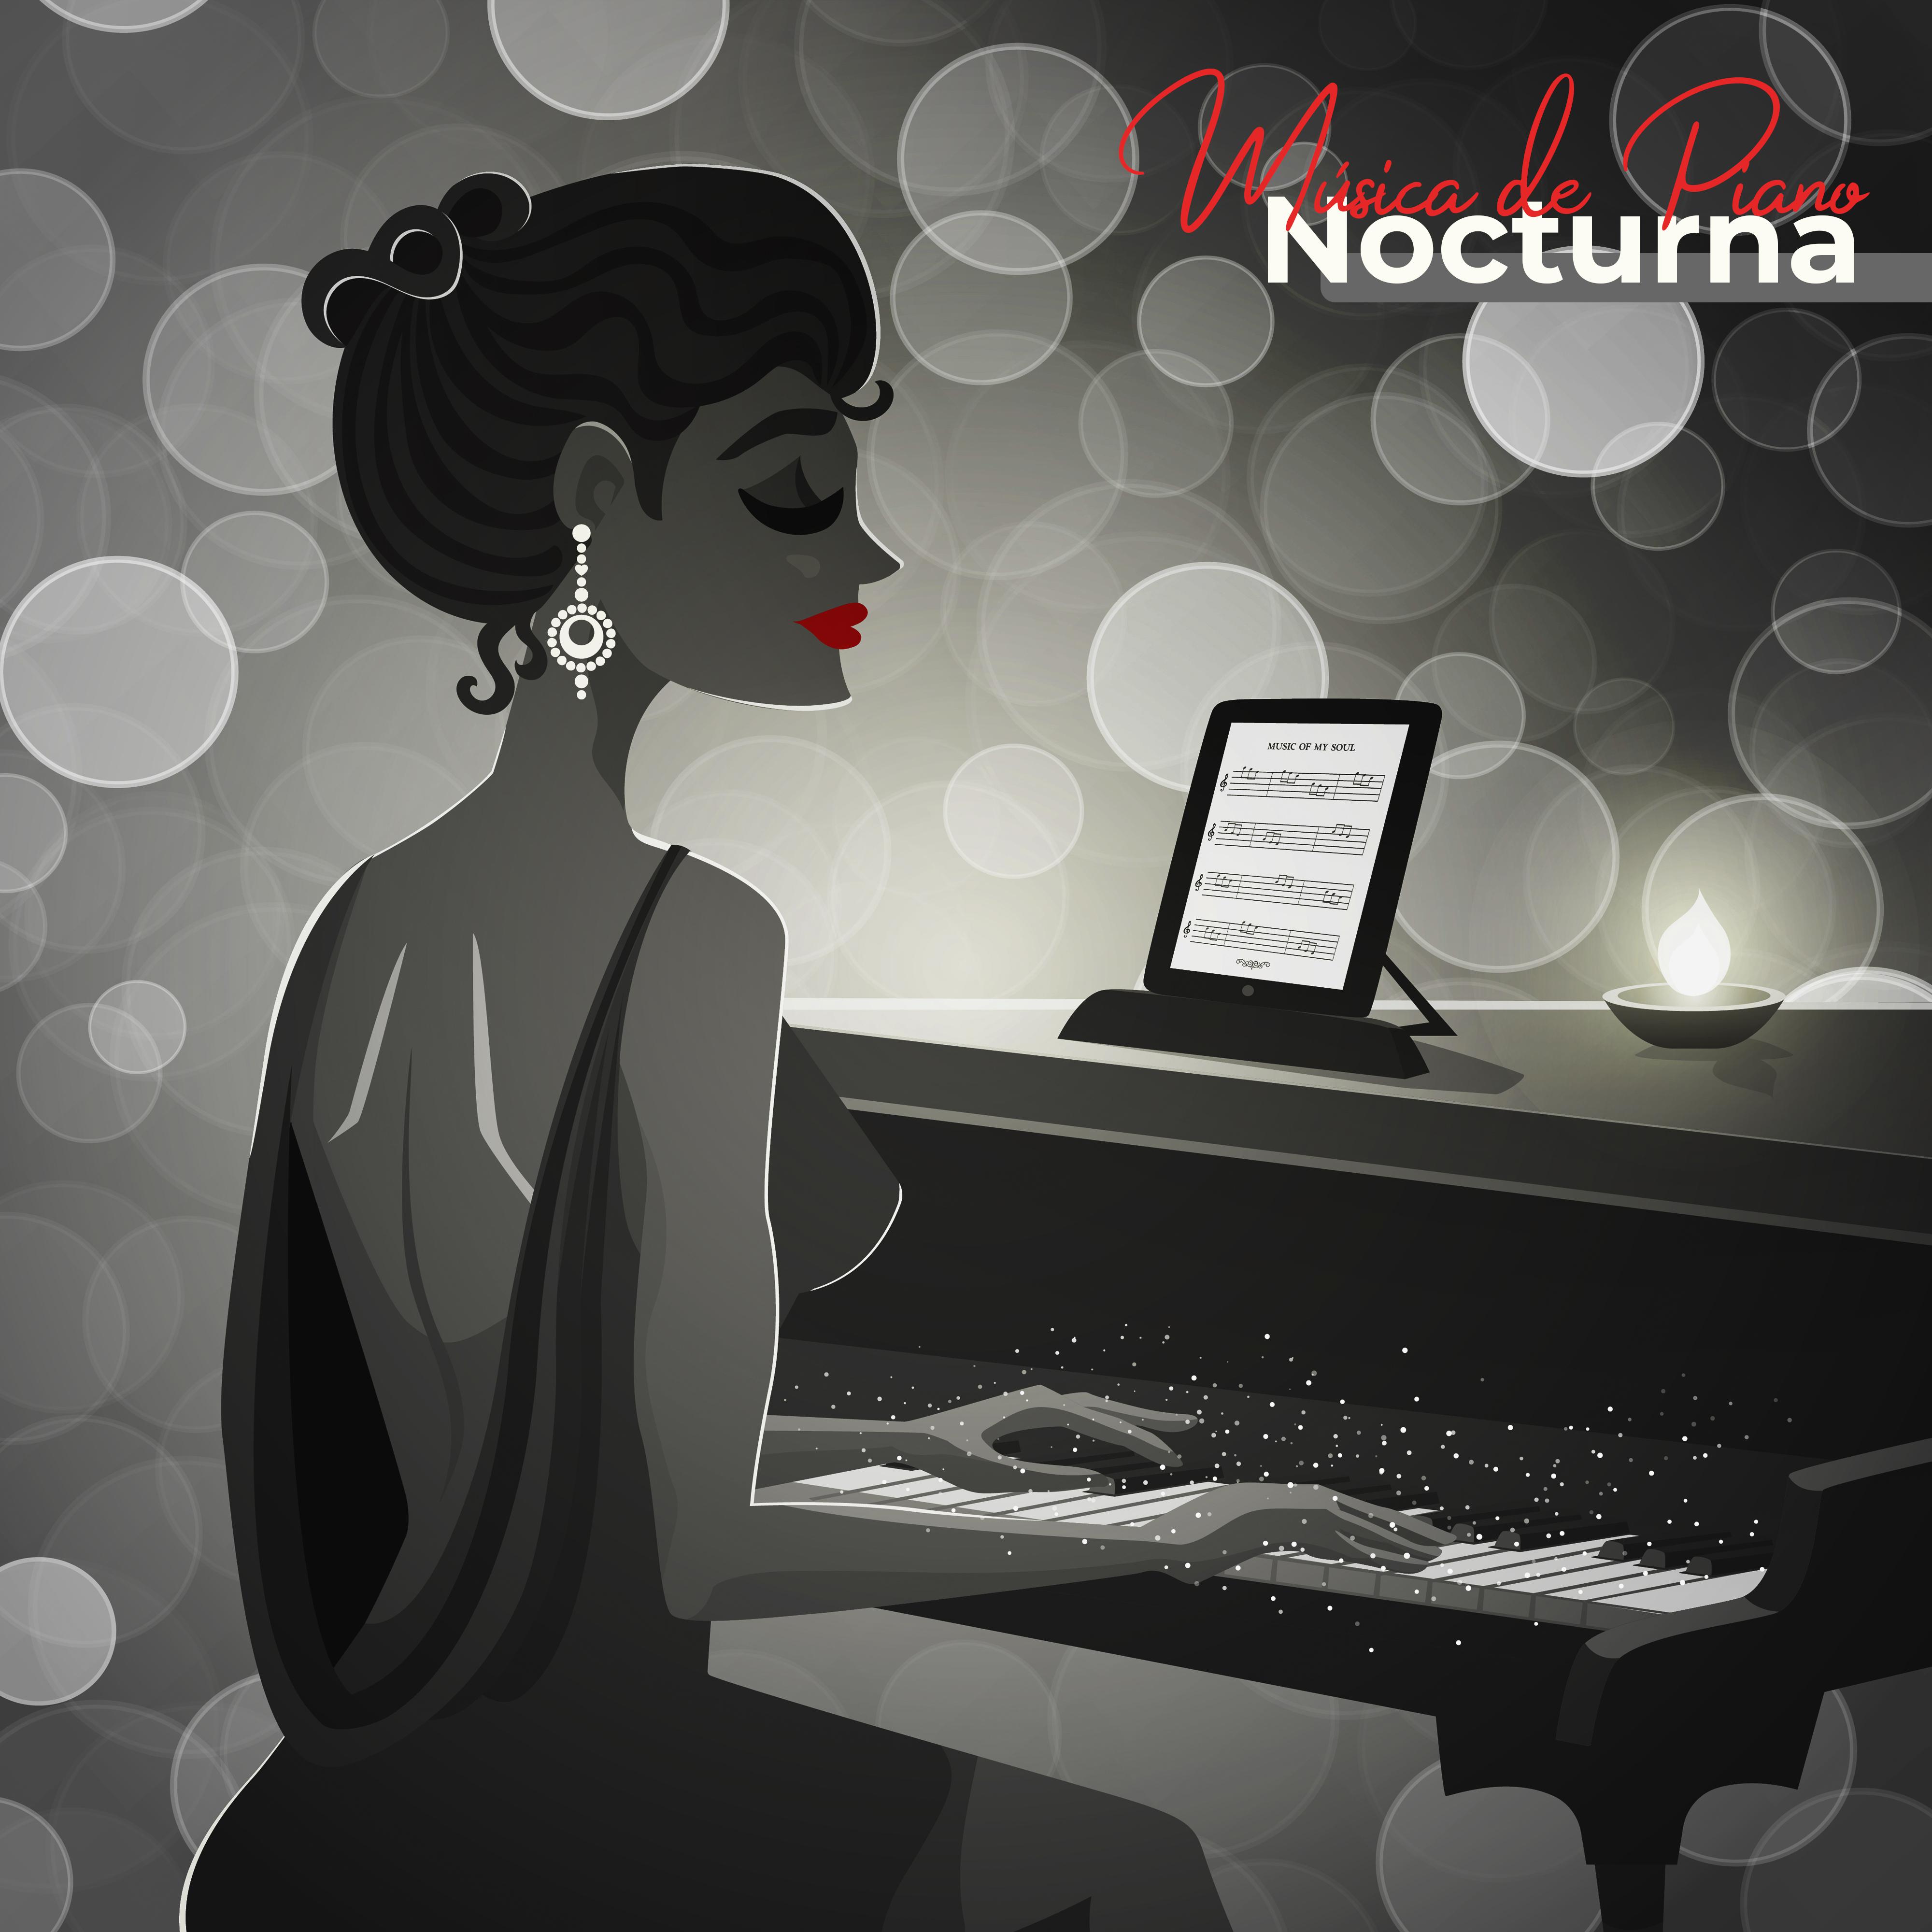 Mu sica de Piano Nocturna Las Composiciones de Piano Ma s Bonitas para el Descanso Nocturno, la Relajacio n o el Sue o.